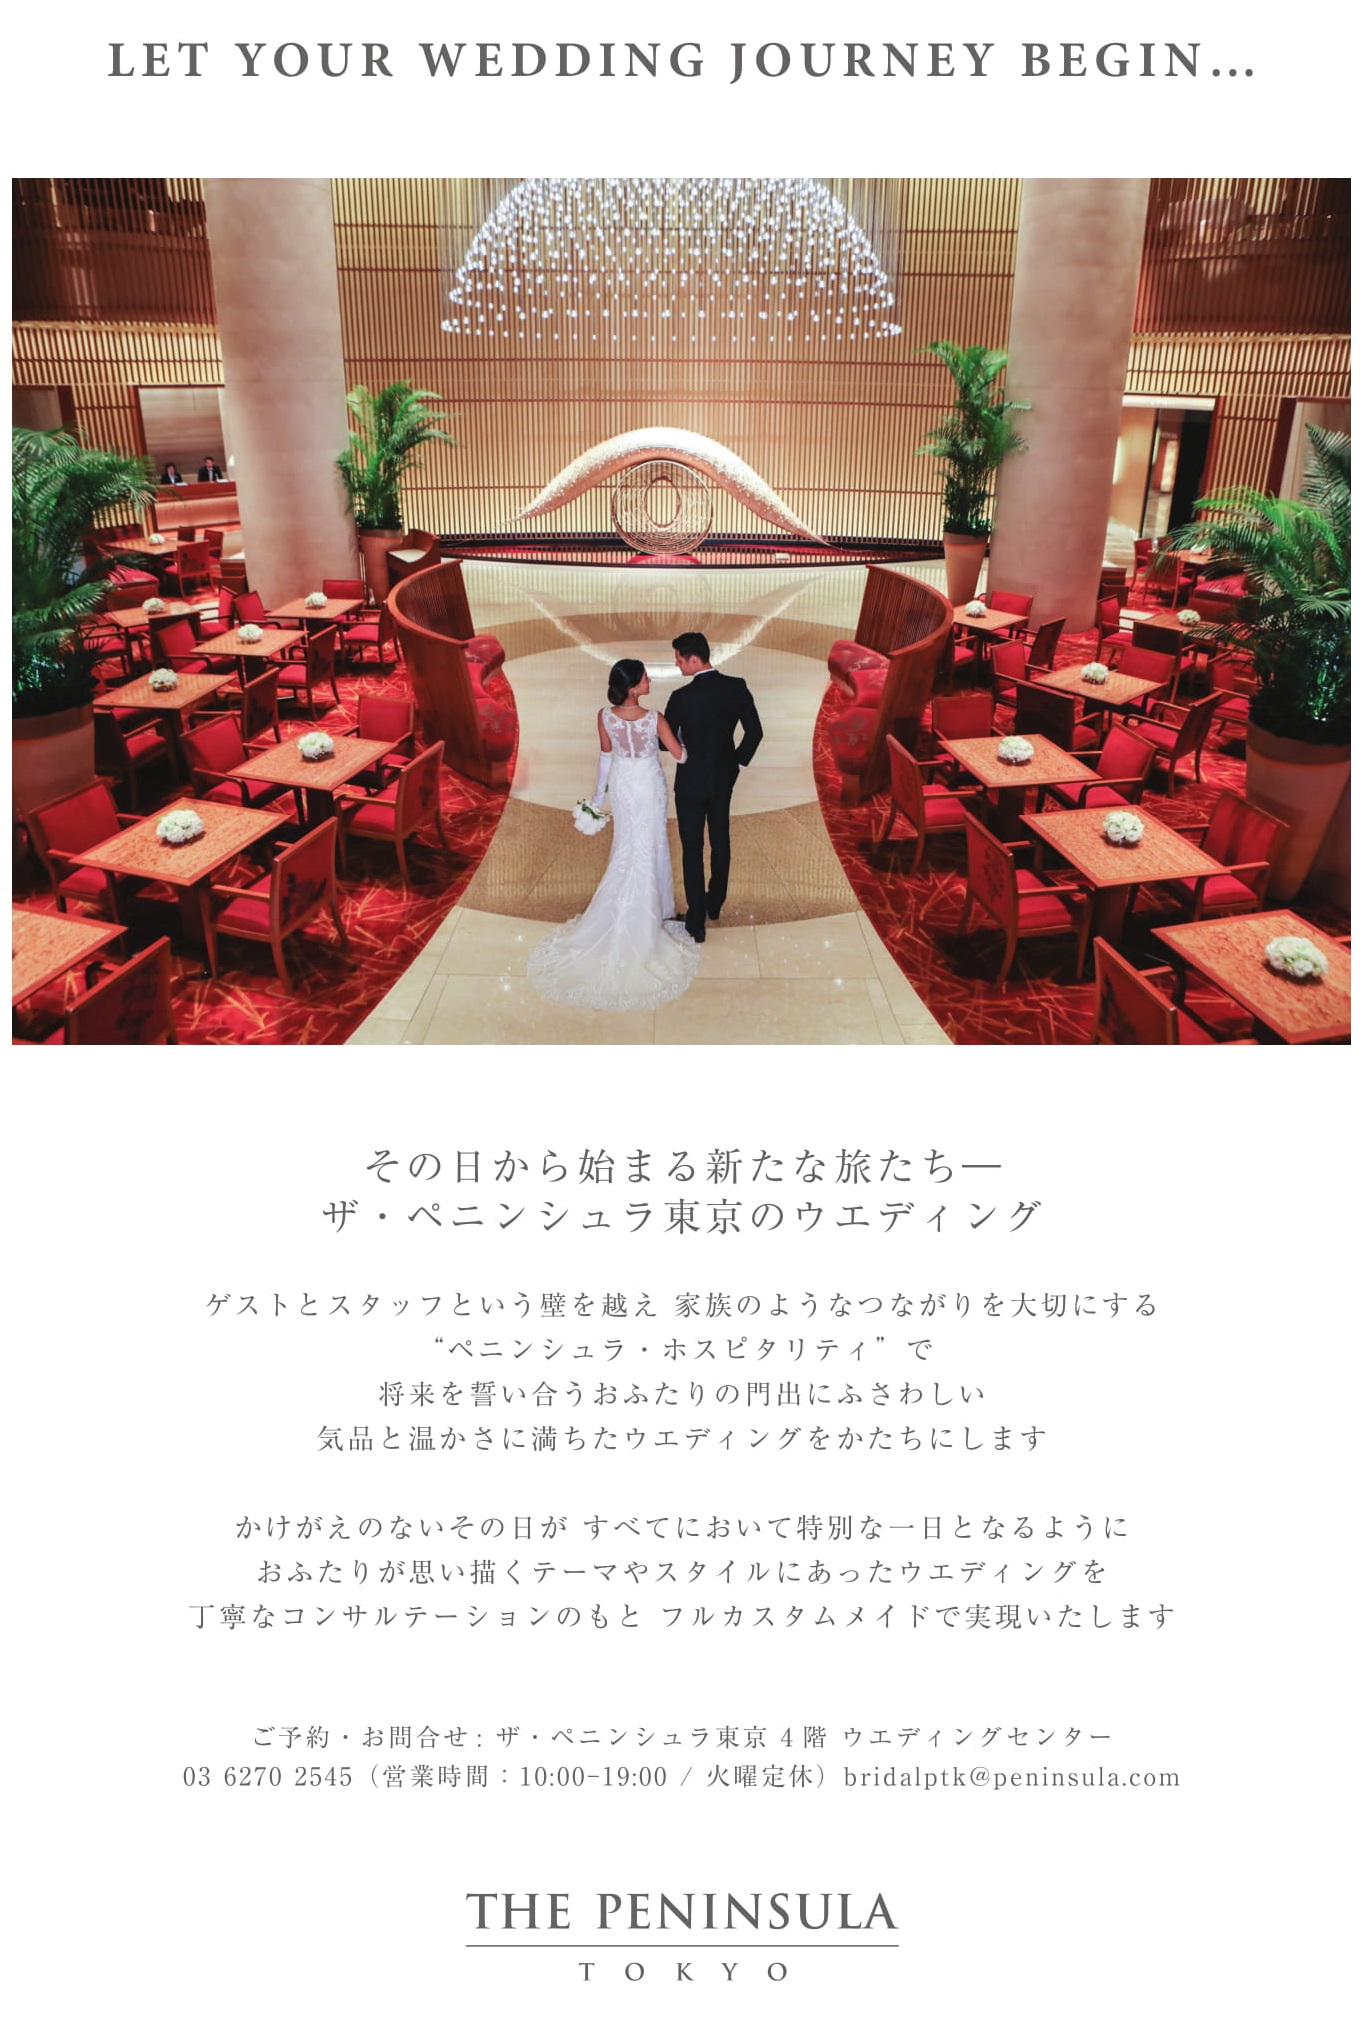 ザ ペニンシュラ東京 おすすめ情報 結婚式場探しなら 阪急ウェディング 公式